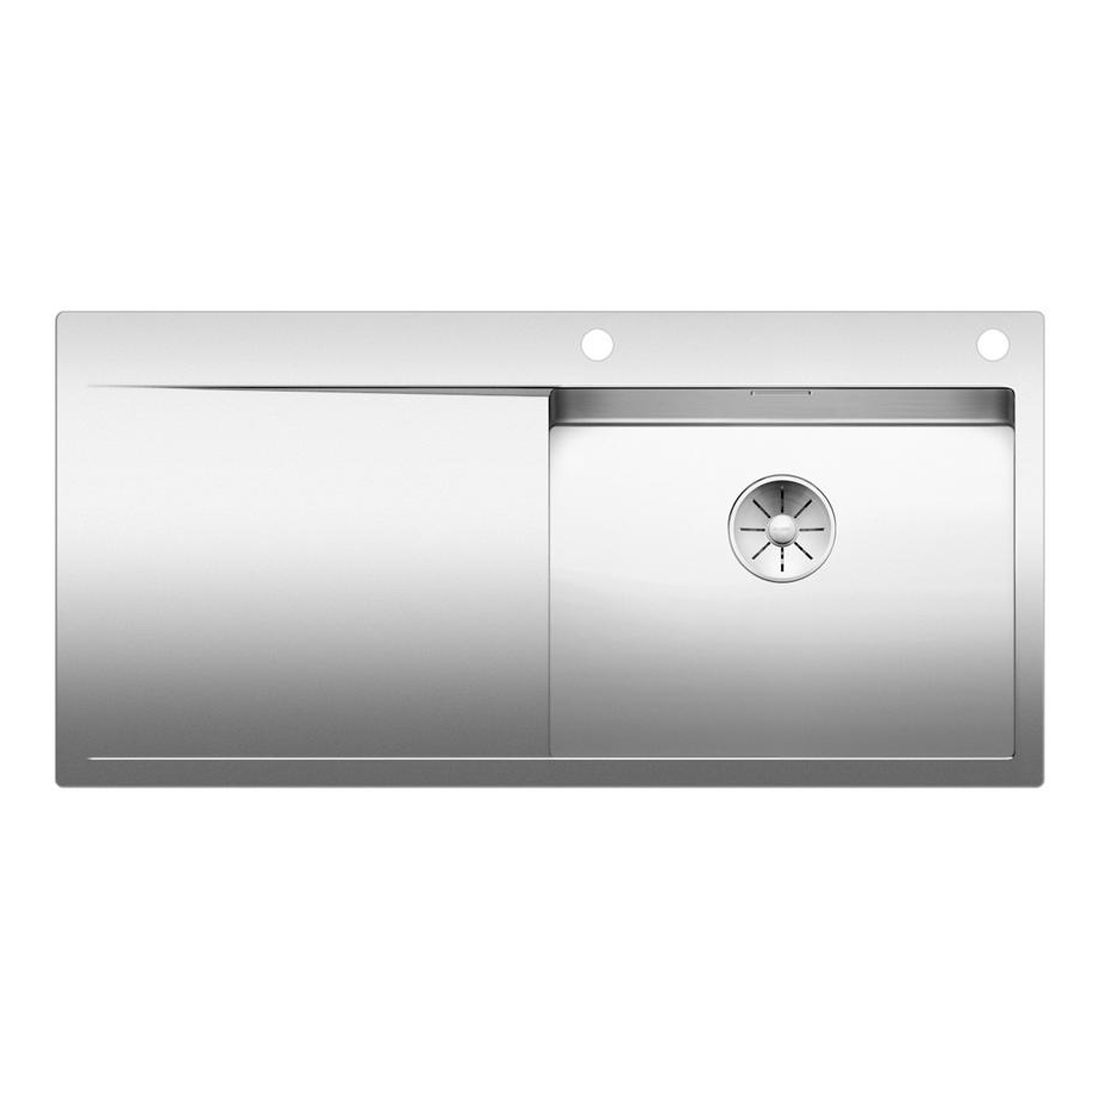 Кухонная мойка Blanco Flow XL 6S-IF полированная сталь набор аксессуаров inda indissima barra 400cns09mhw calacatta сталь